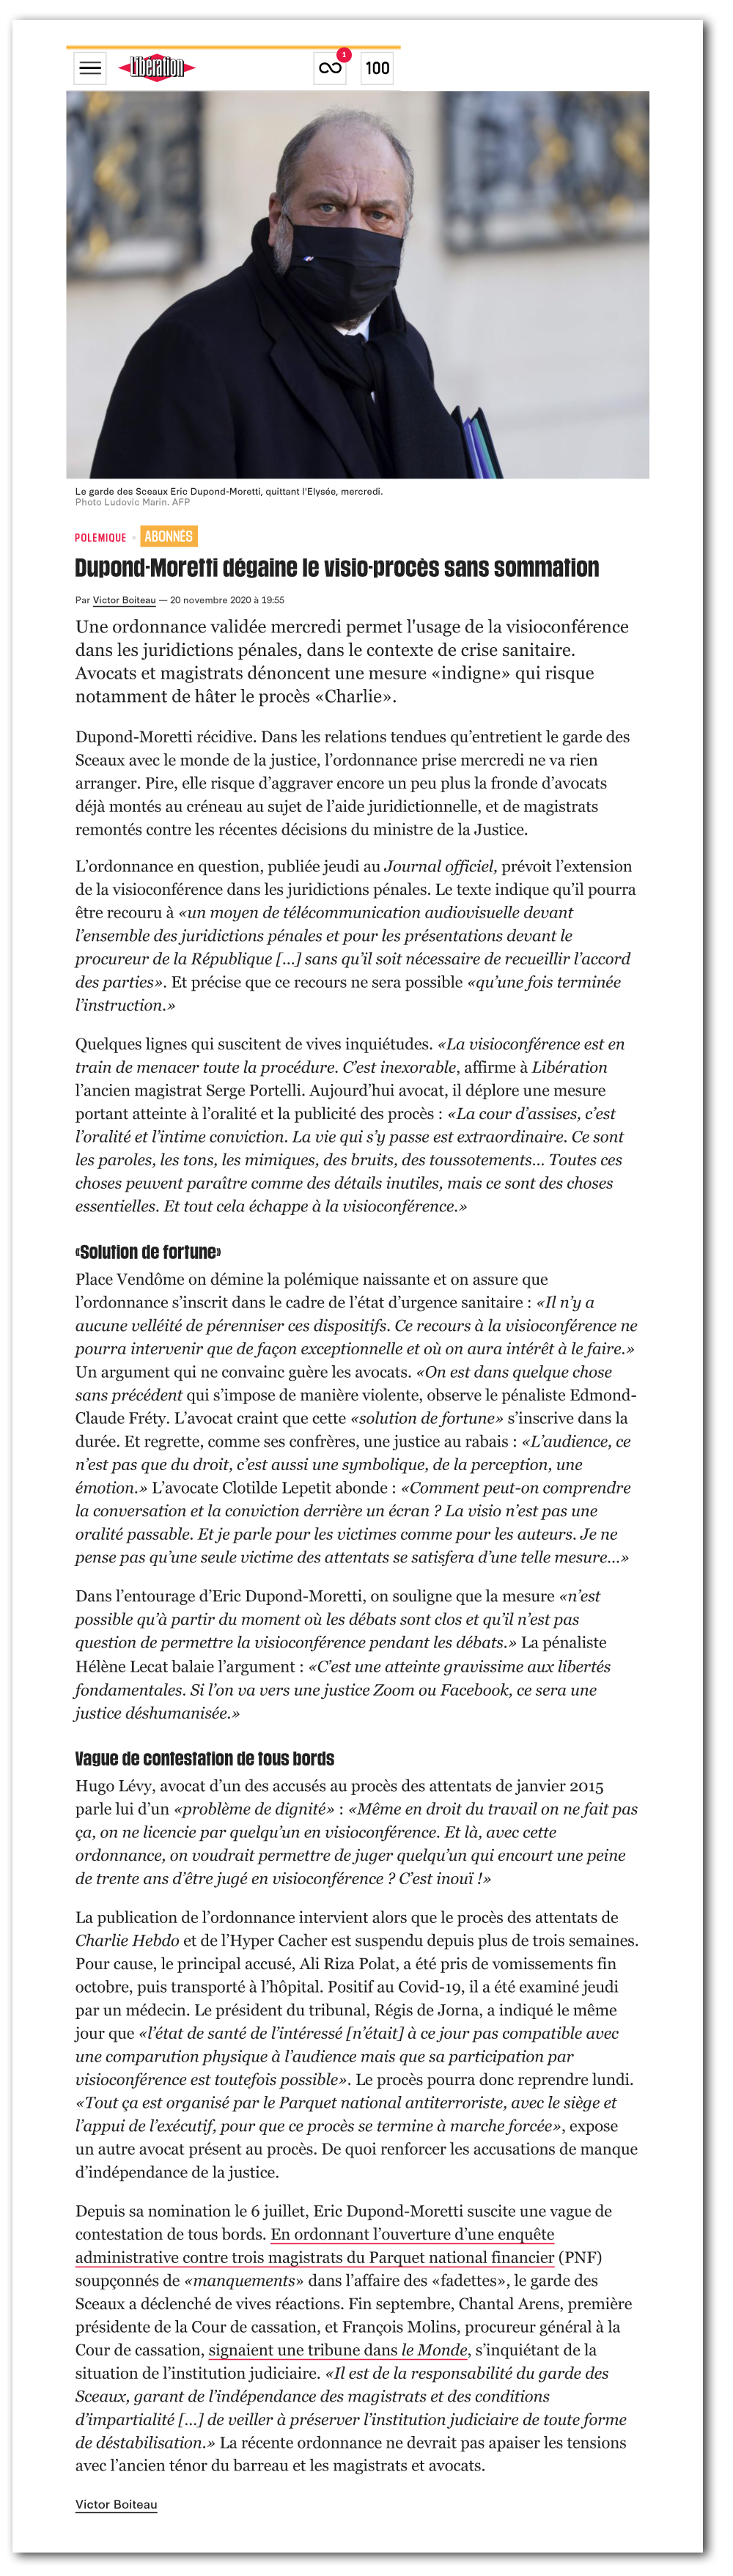 Article Libération "Dupond-Moretti dégaine le visio-procès sans sommation"